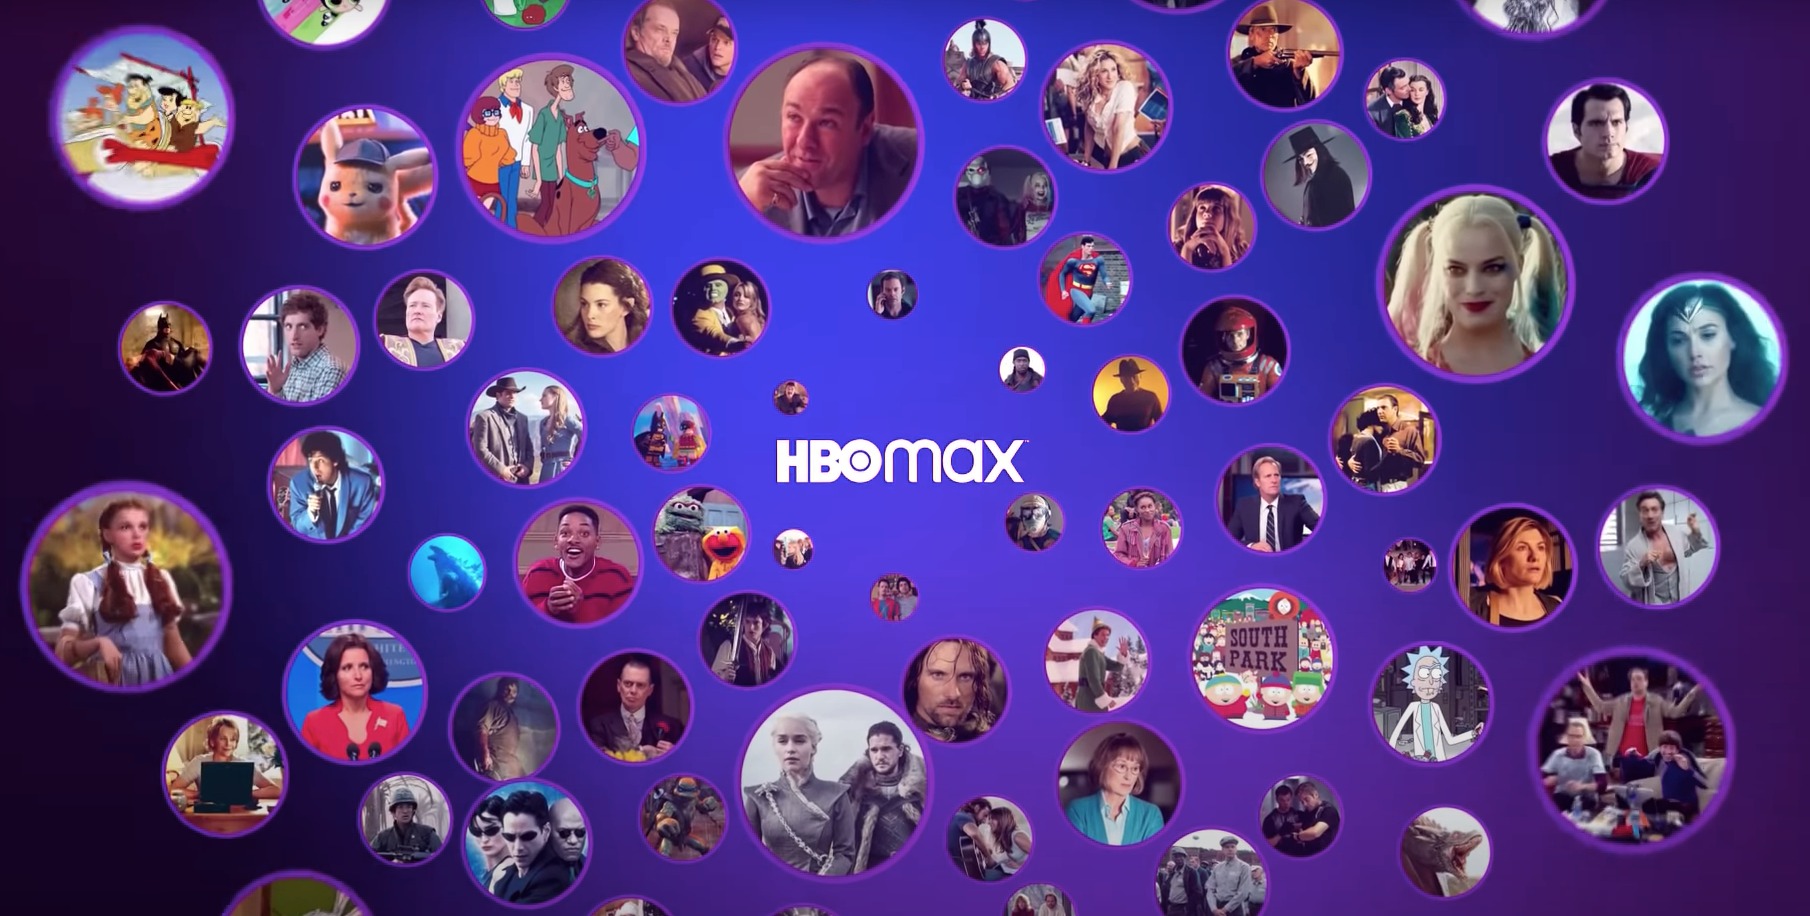 Η συνδρομητική υπηρεσία HBO Max έρχεται στην Ευρώπη και τη Λατινική Αμερική, όχι όμως στην Ελλάδα